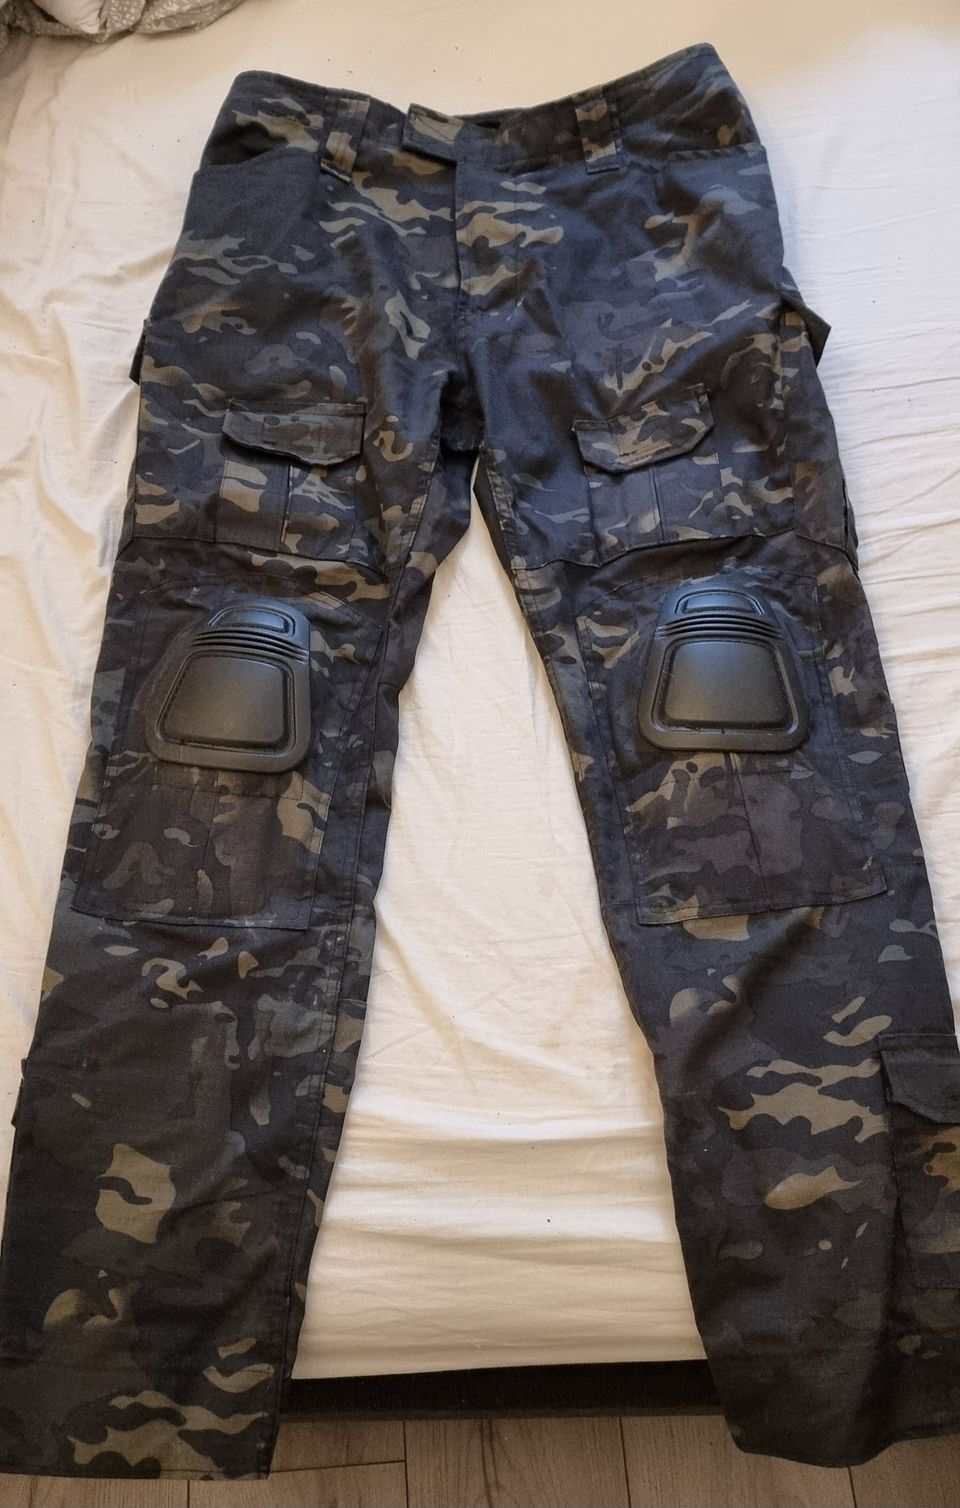 Tactical pants polvisuojilla ja tekninen paita